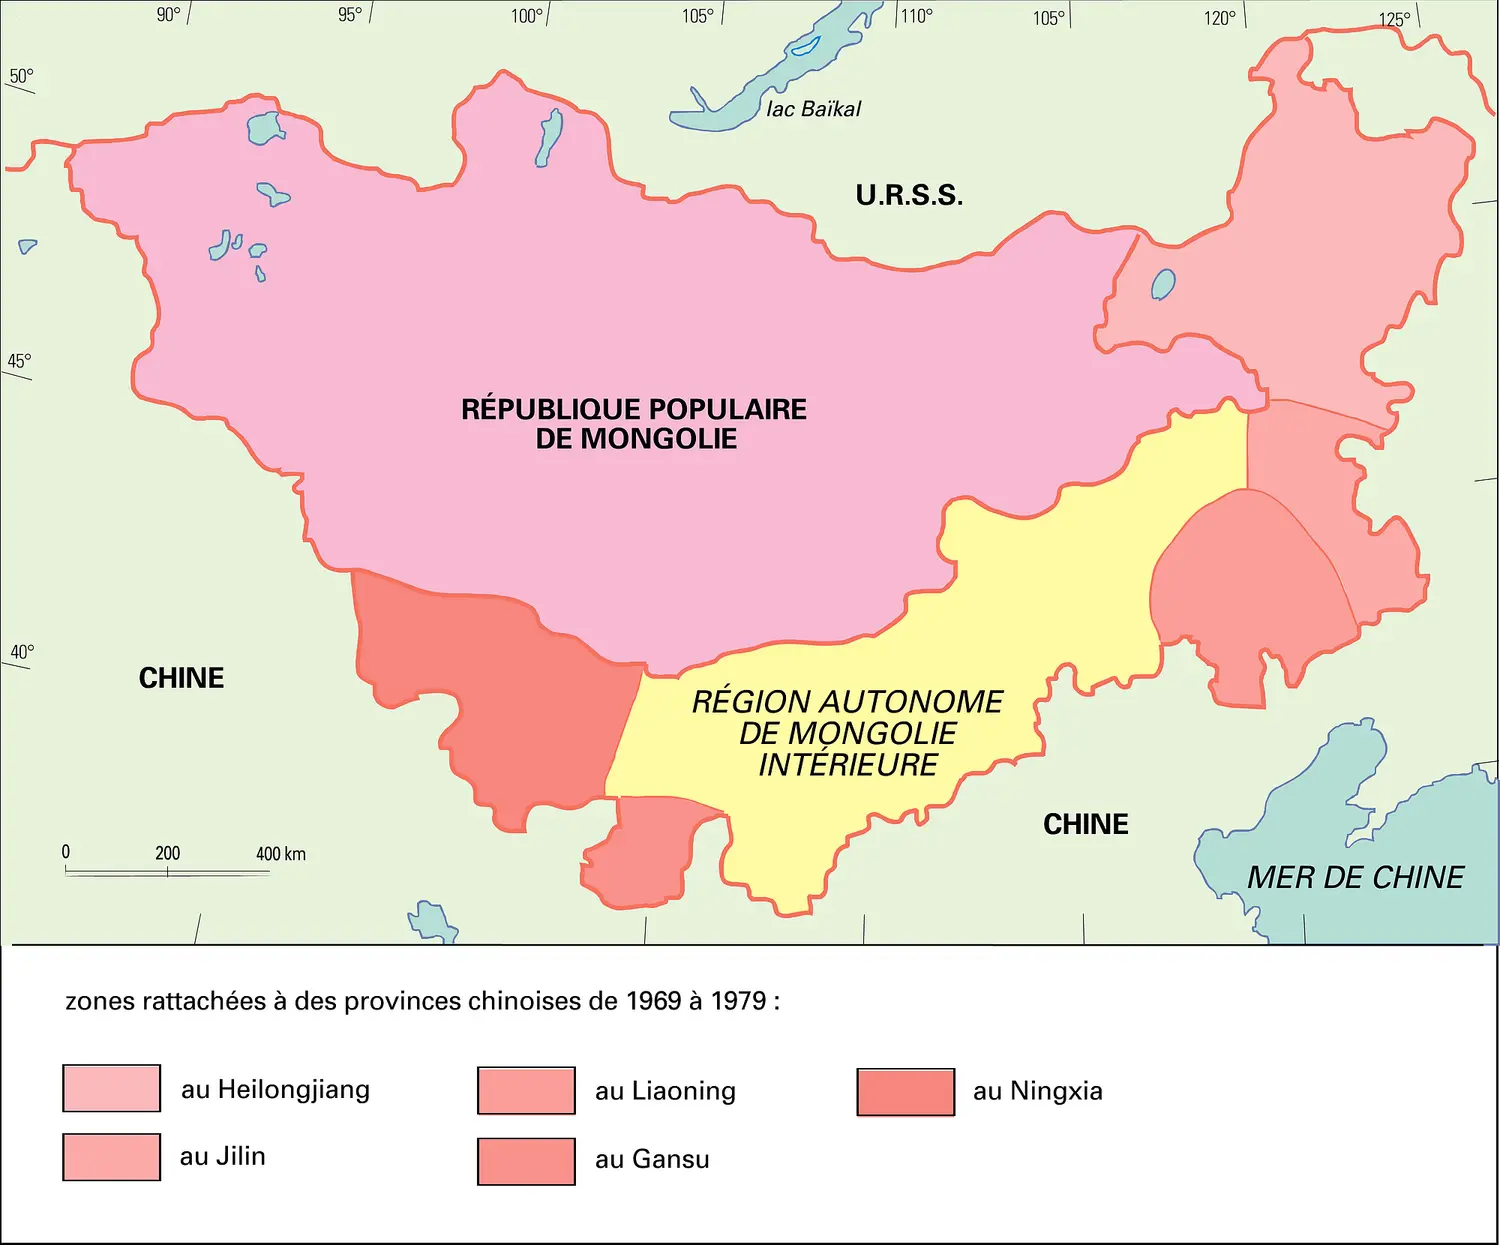 Zones rattachées à la Chine de 1969 à 1979